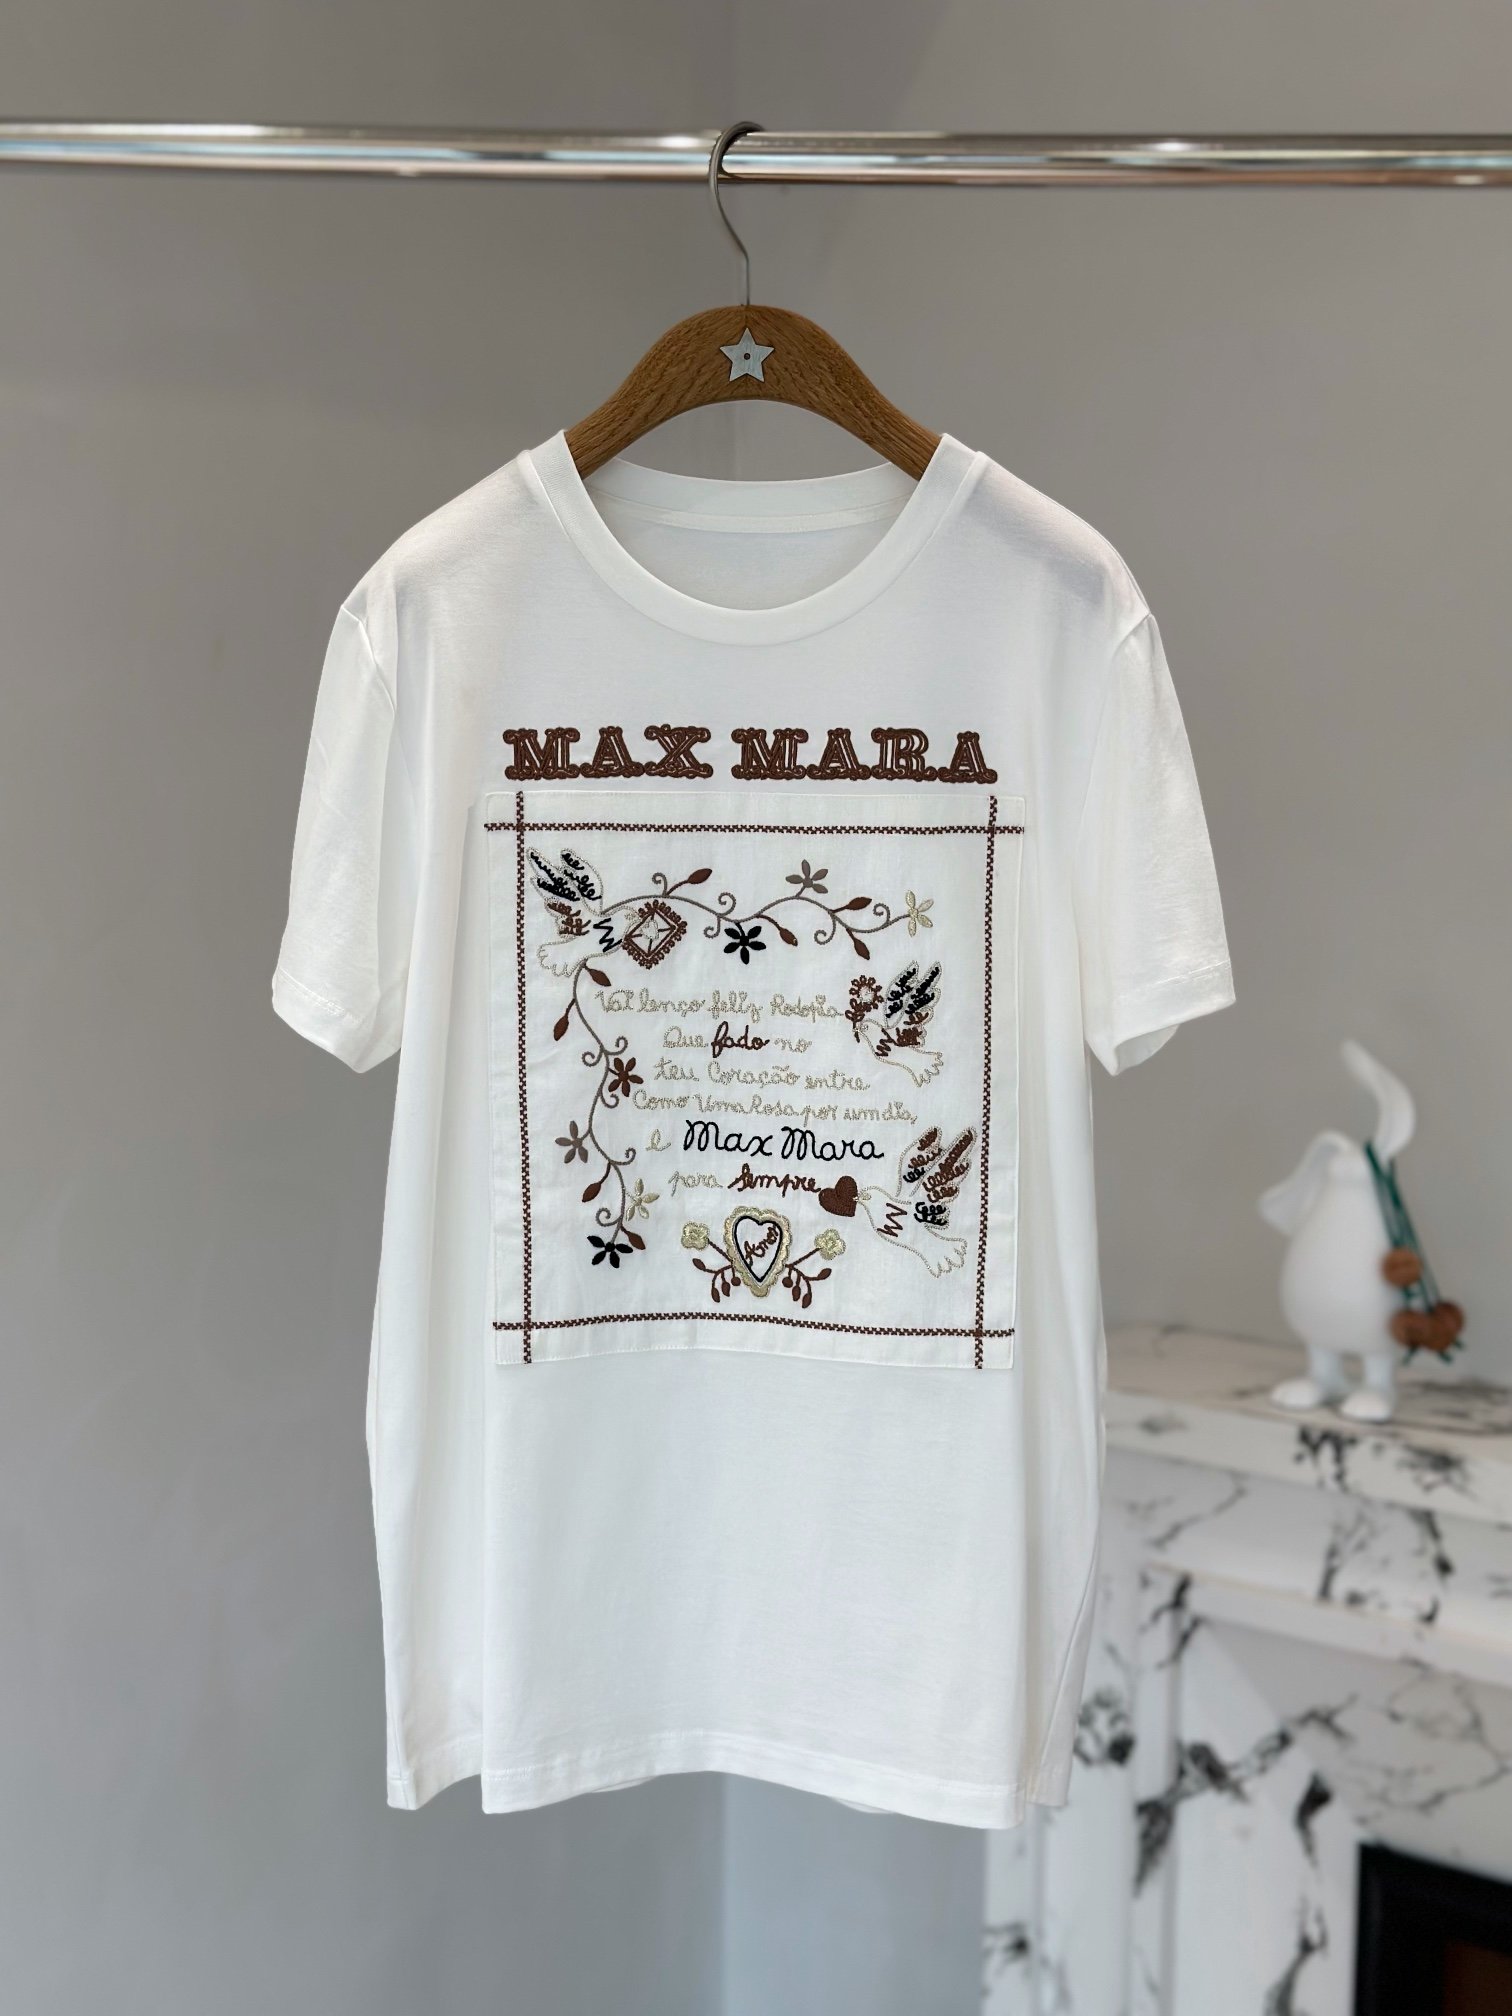 Pezdjs:【原单】Maxmara幸福手帕T恤 幸福寄语设计灵感来自葡萄牙Minho地区的文化传统称为“爱的手帕”Size:XS S M L